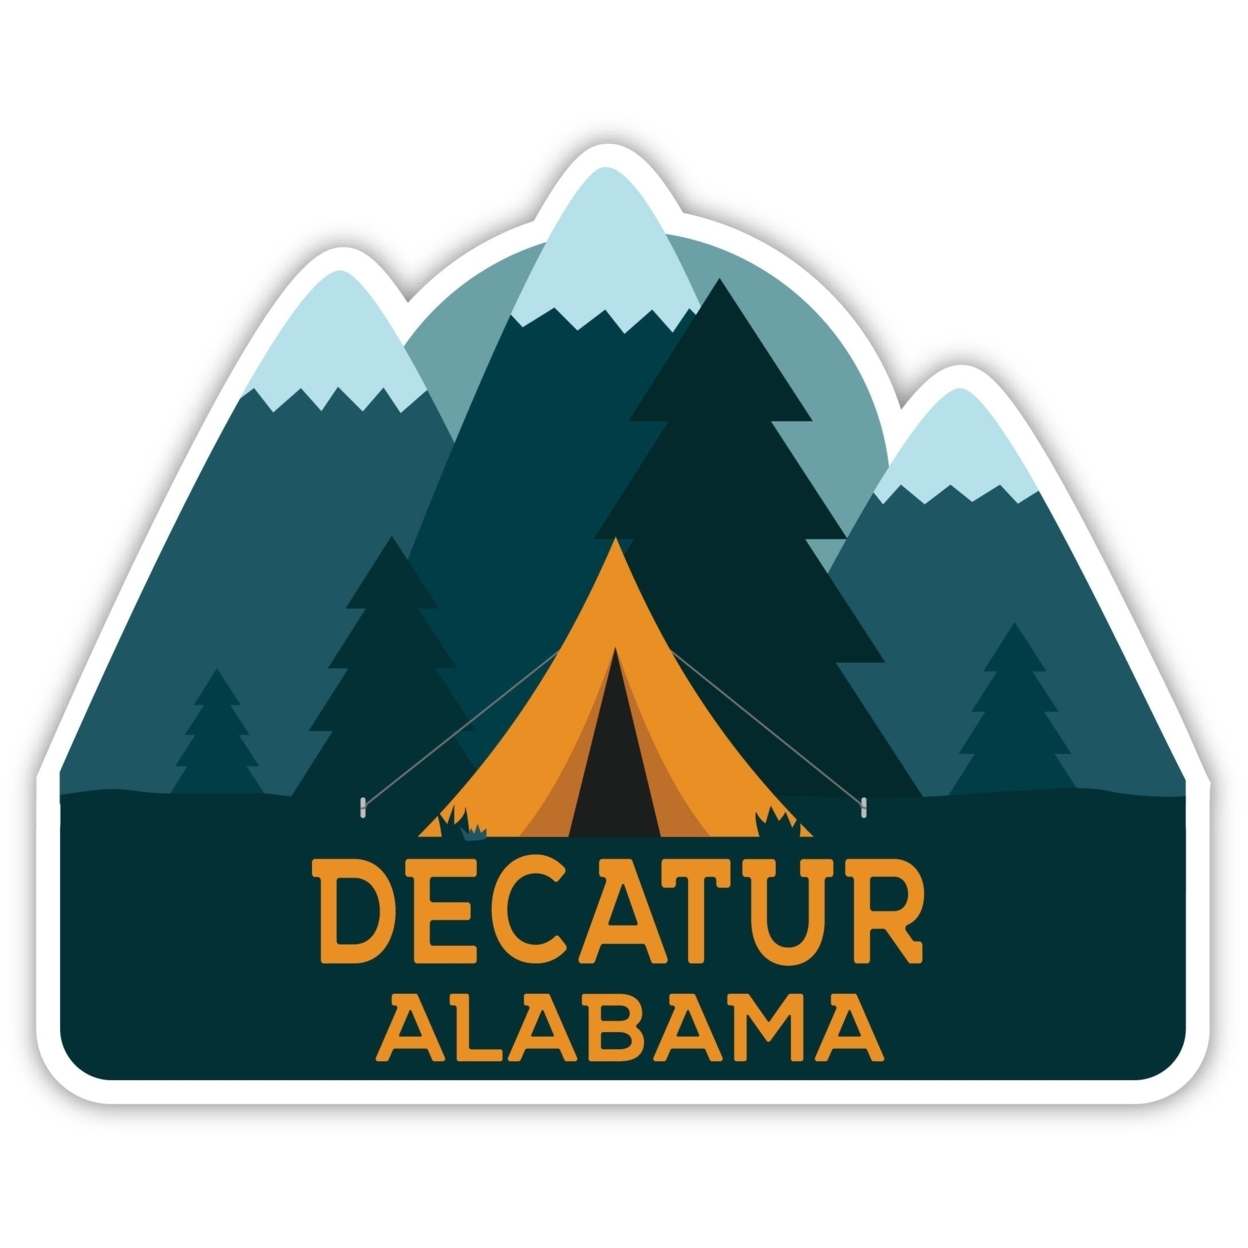 Decatur Alabama Souvenir Decorative Stickers (Choose Theme And Size) - Single Unit, 6-Inch, Tent